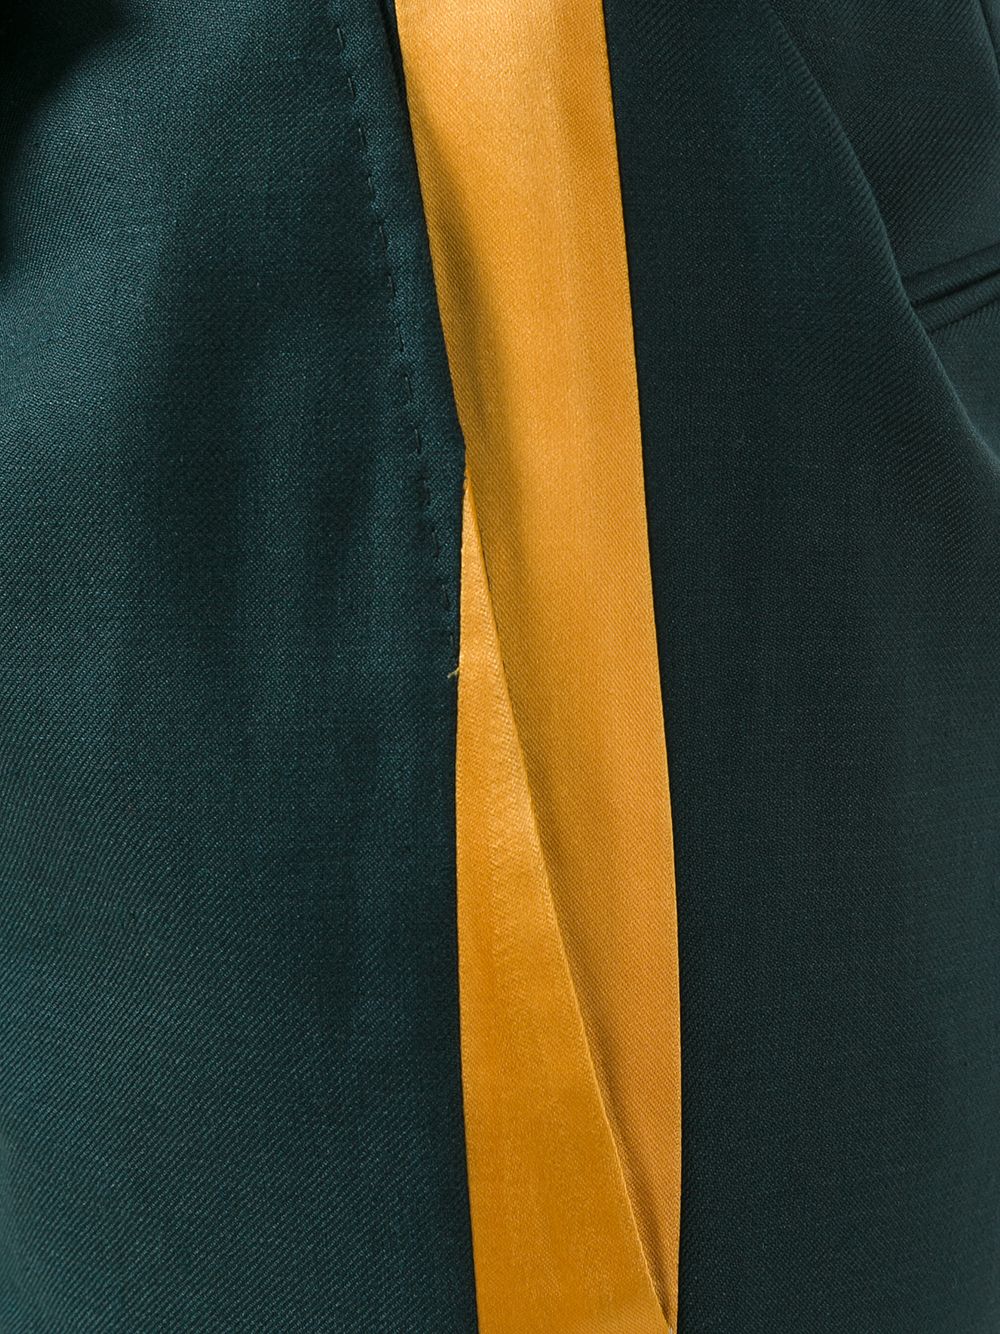 фото Paul smith шорты с поясом и полосками по бокам